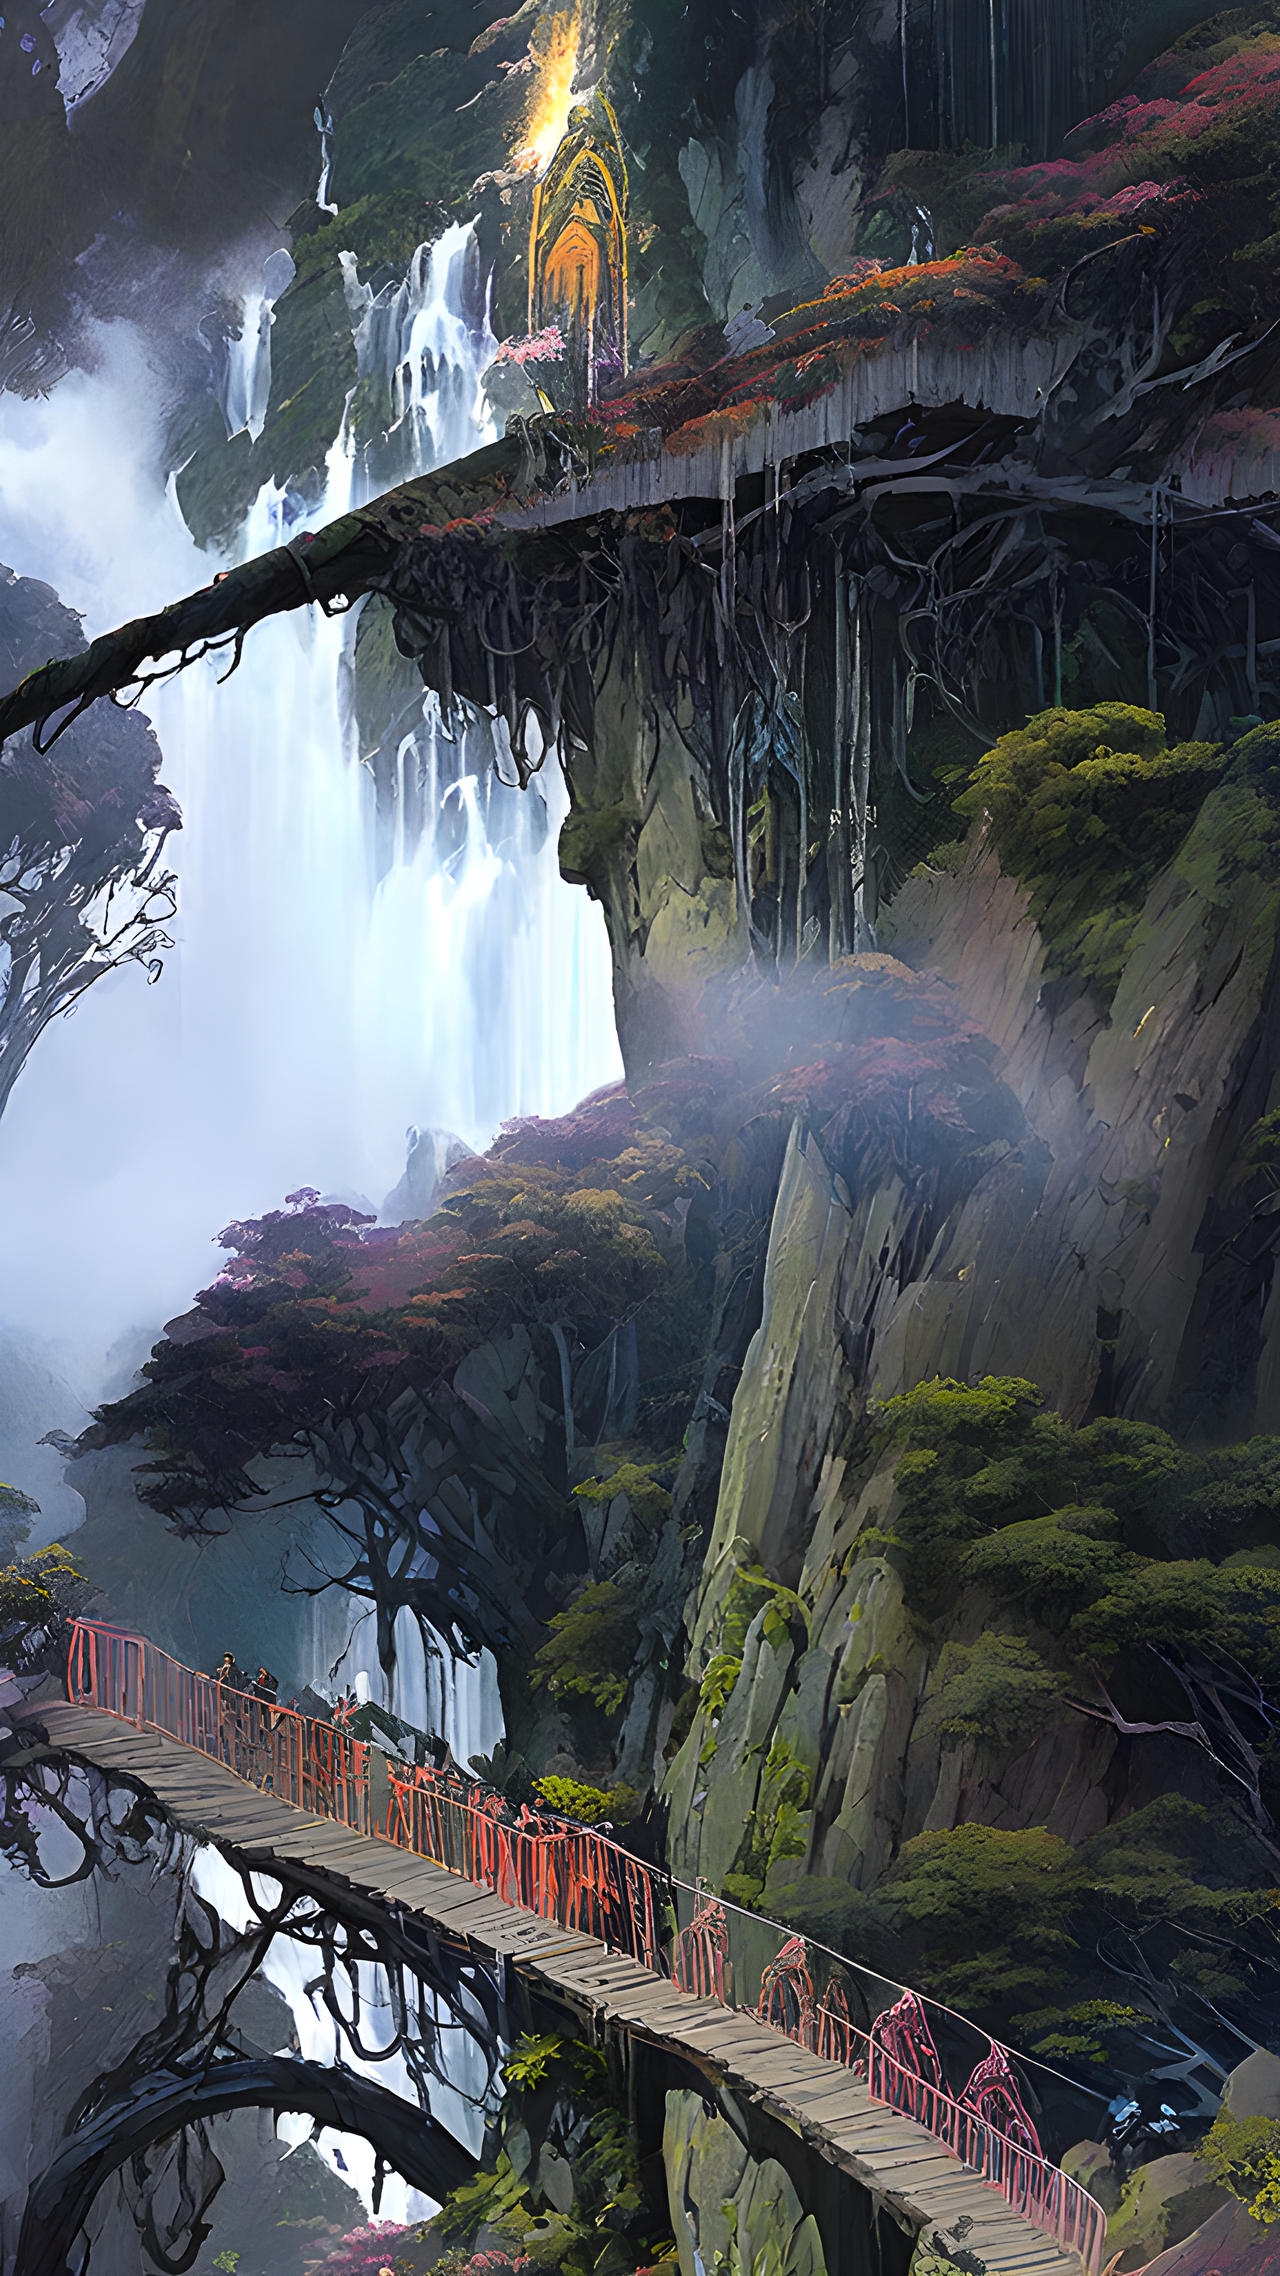 Rope Bridge in Fantasy Landscape 1 by Tirinium1 on DeviantArt